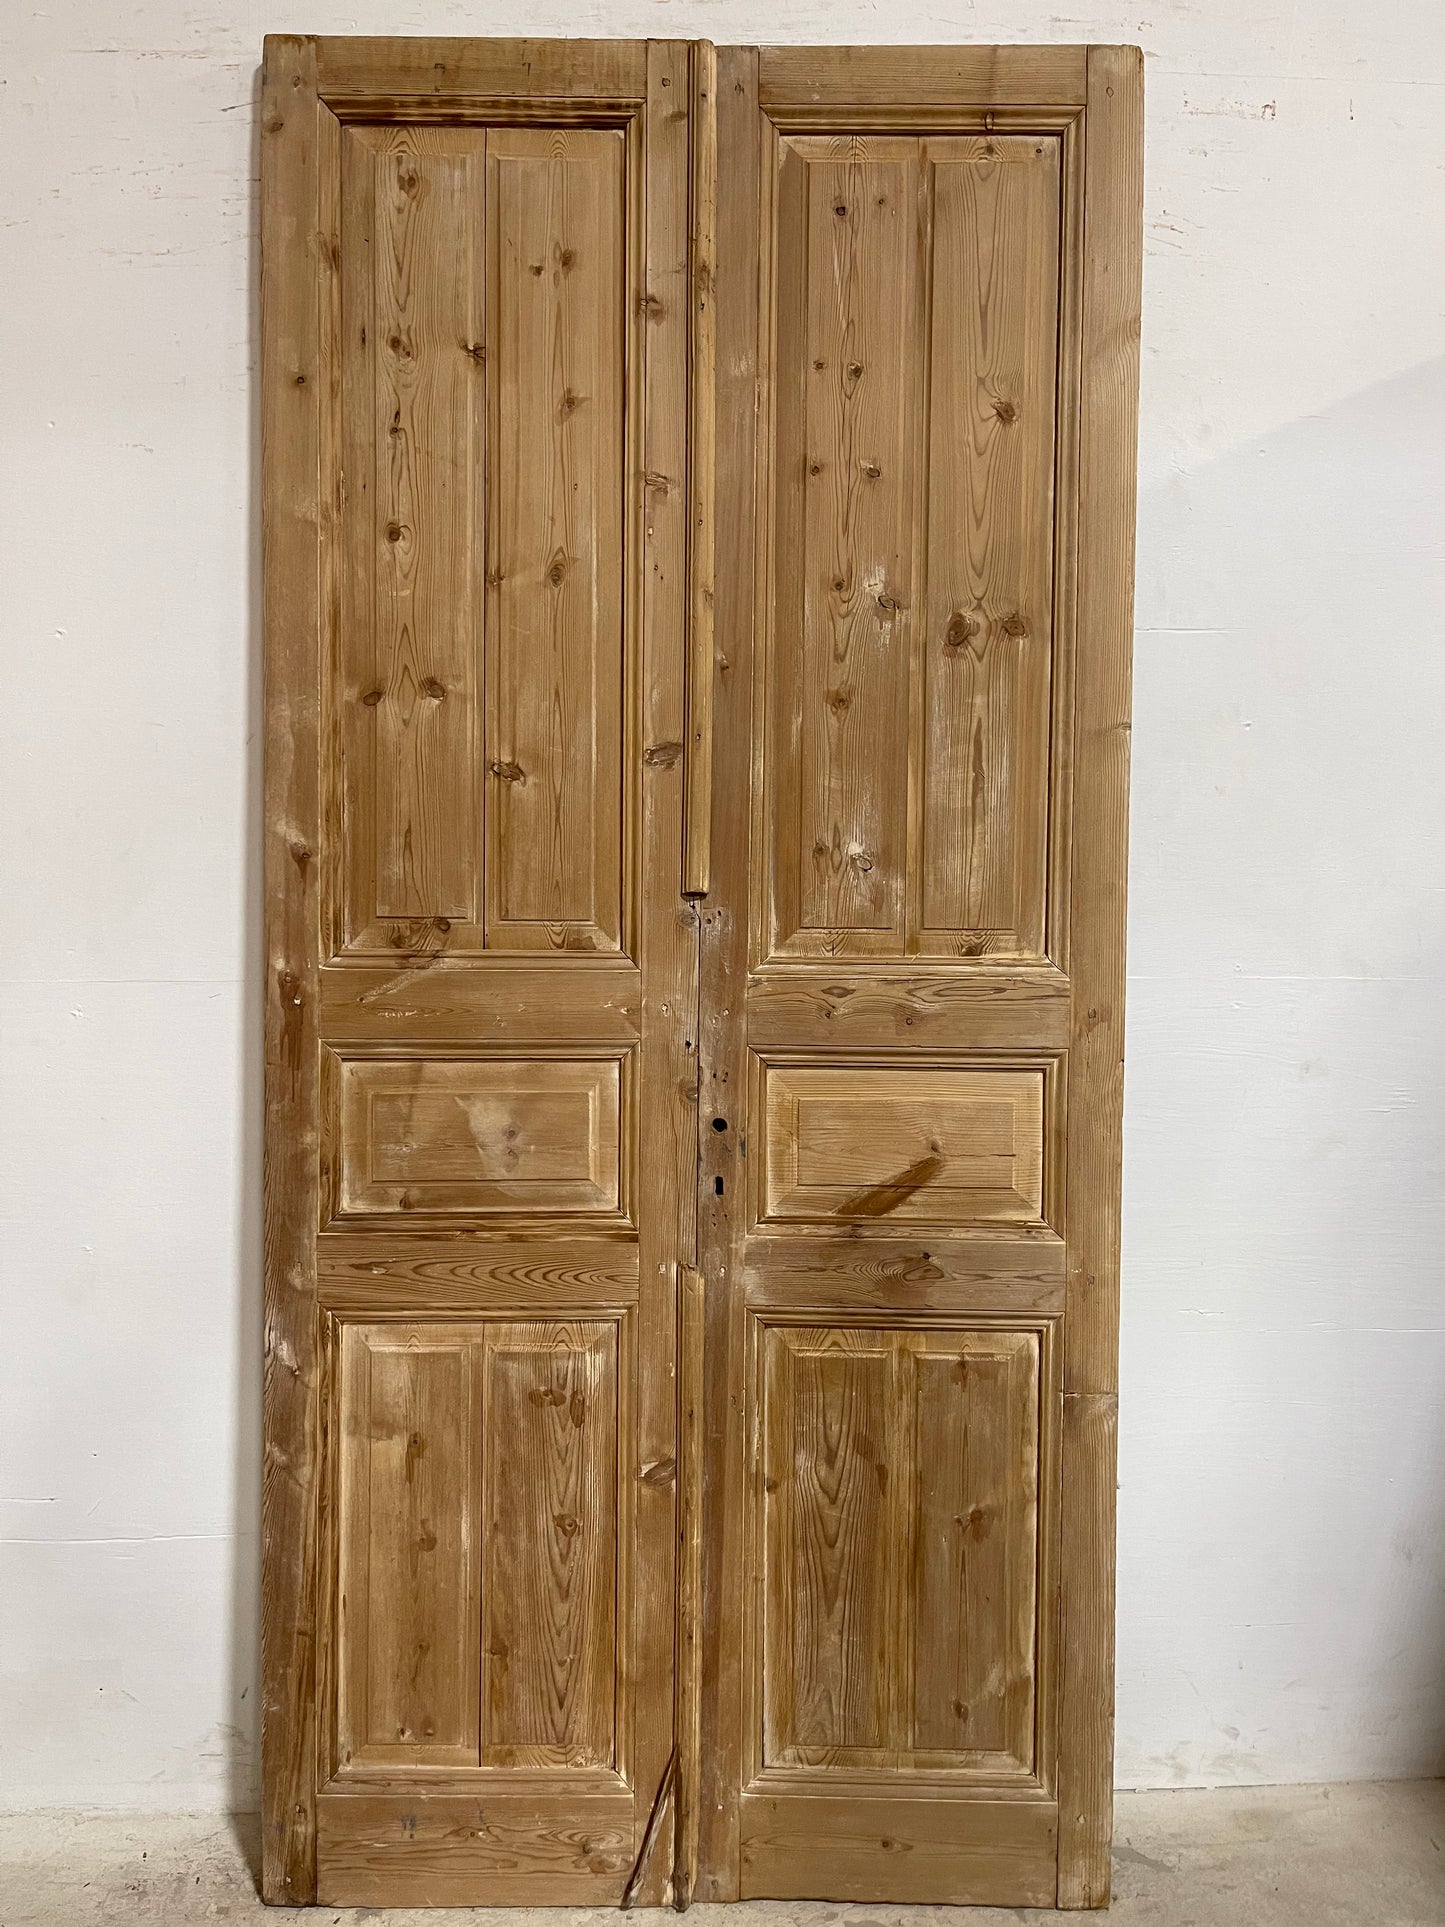 Antique French panel Doors (95.5x44.25) J651